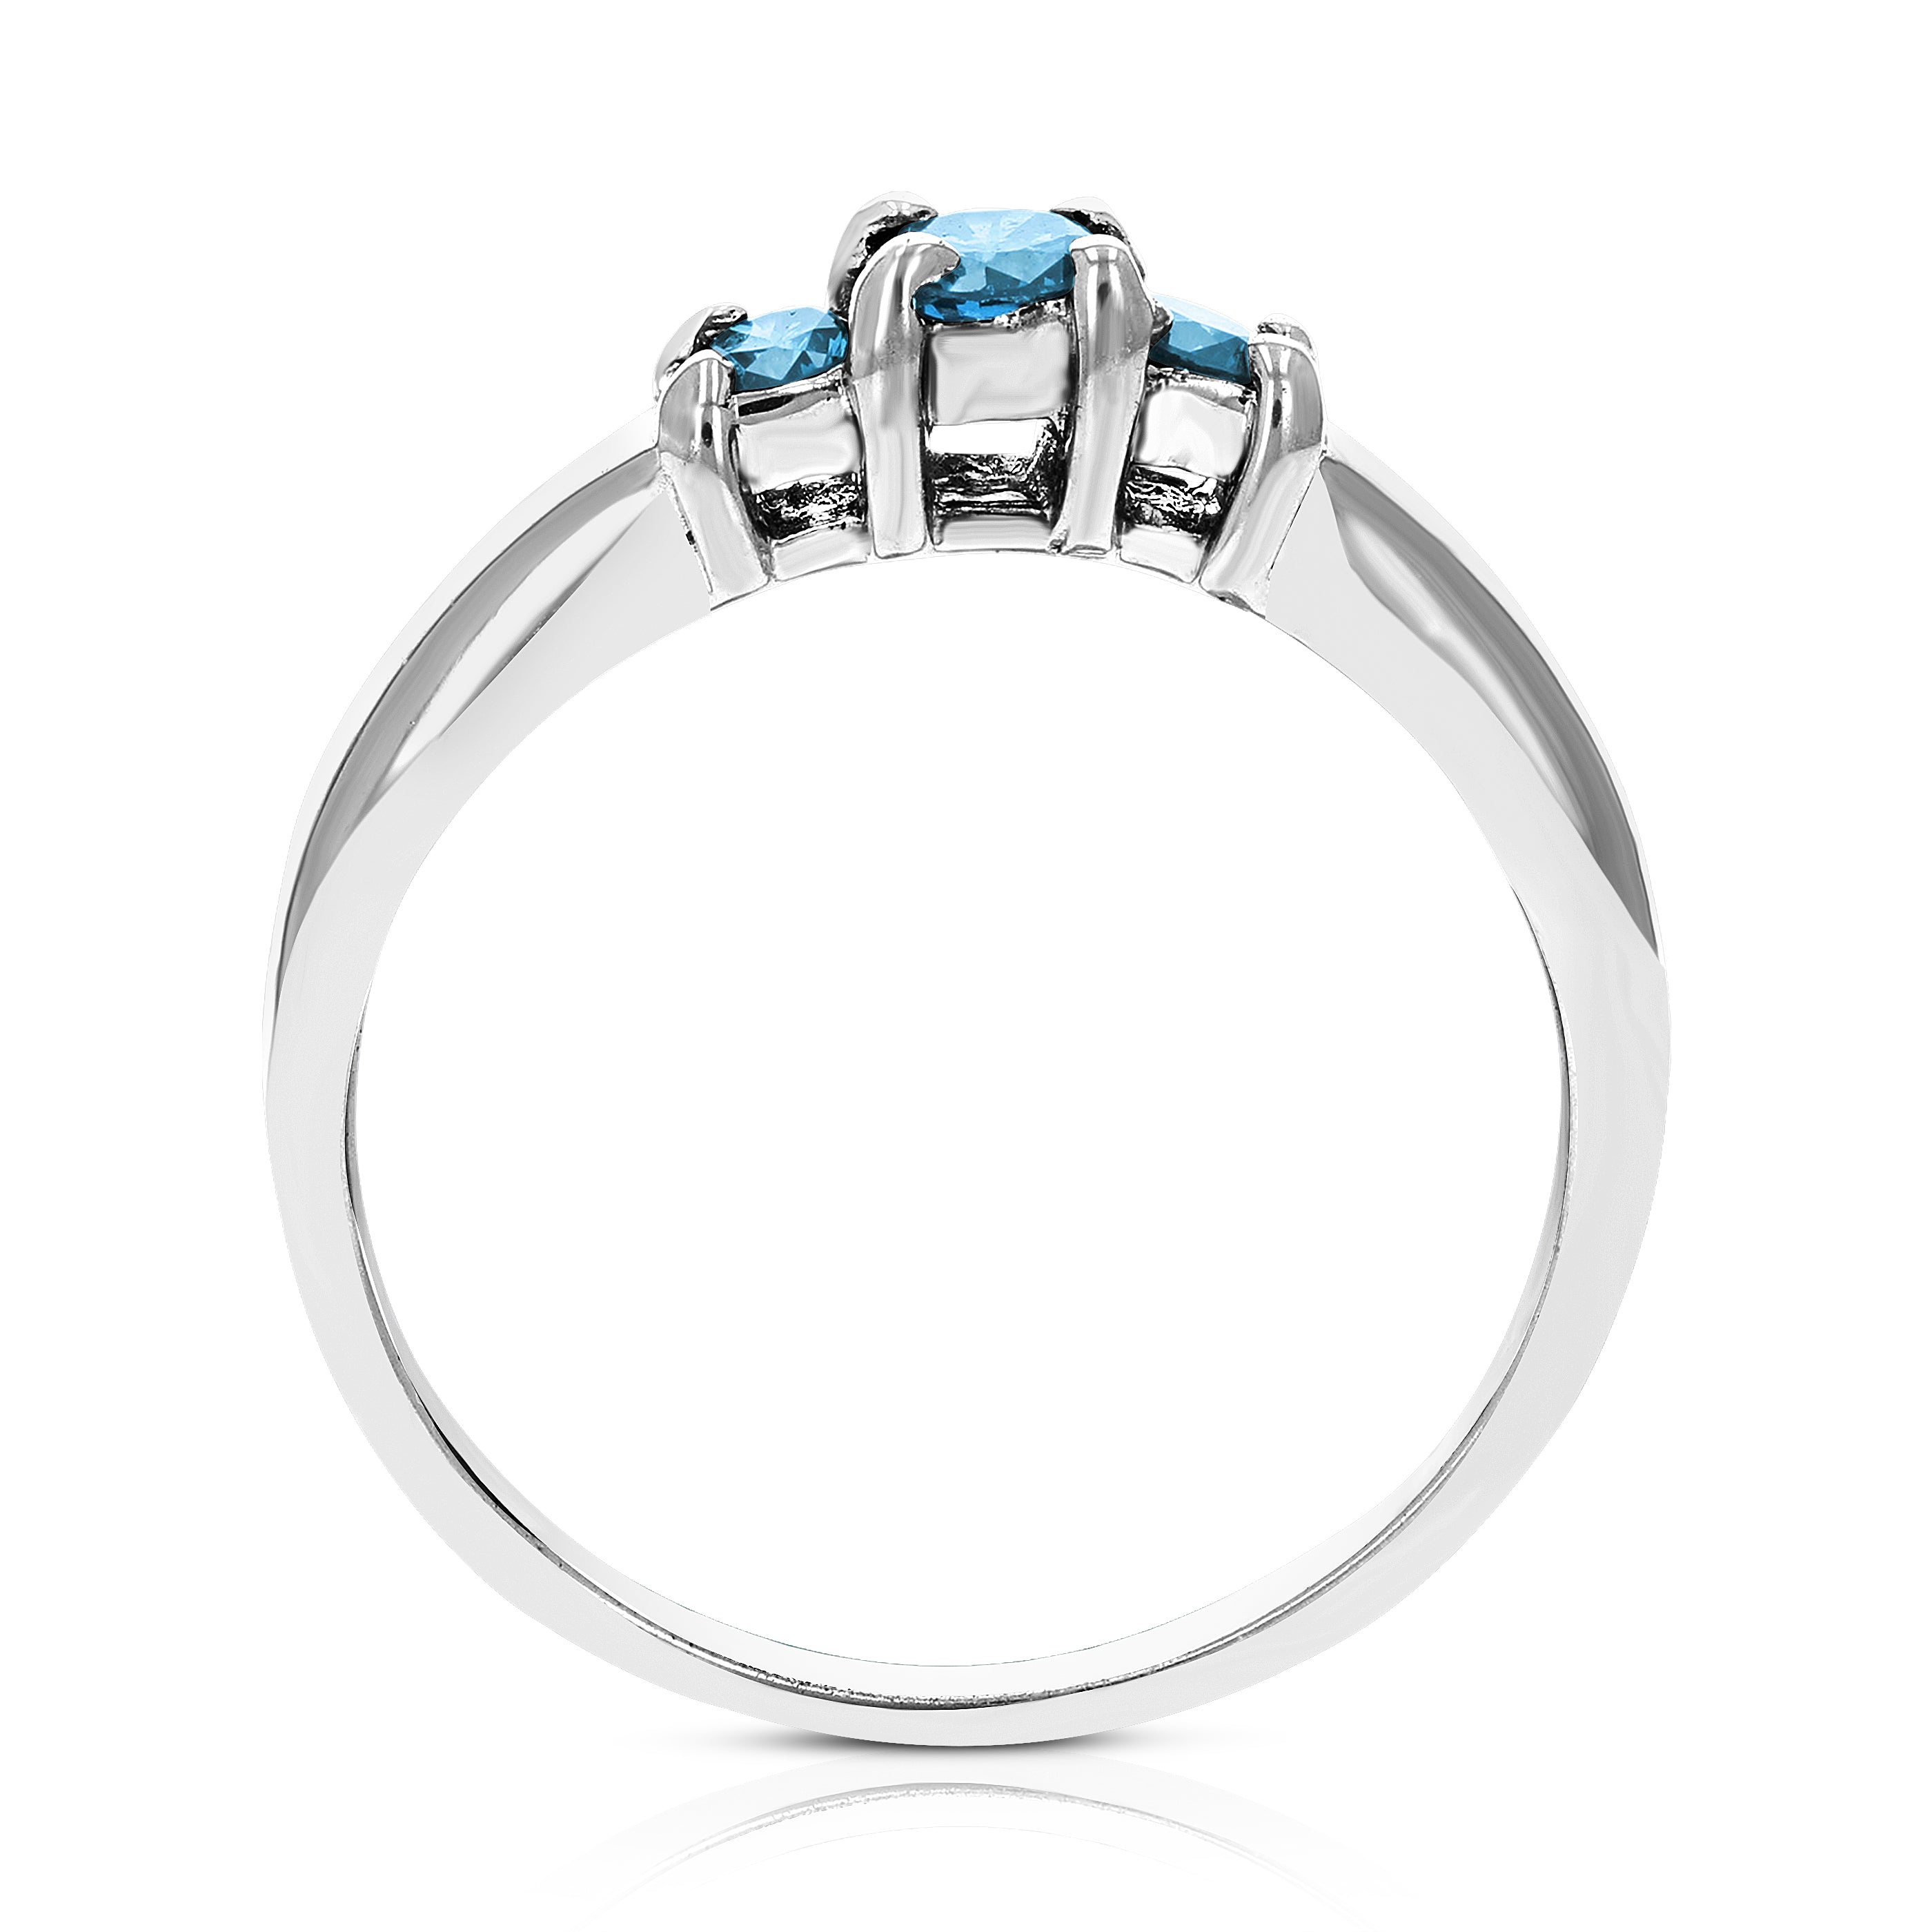 Three Princess Blue Diamond Ring